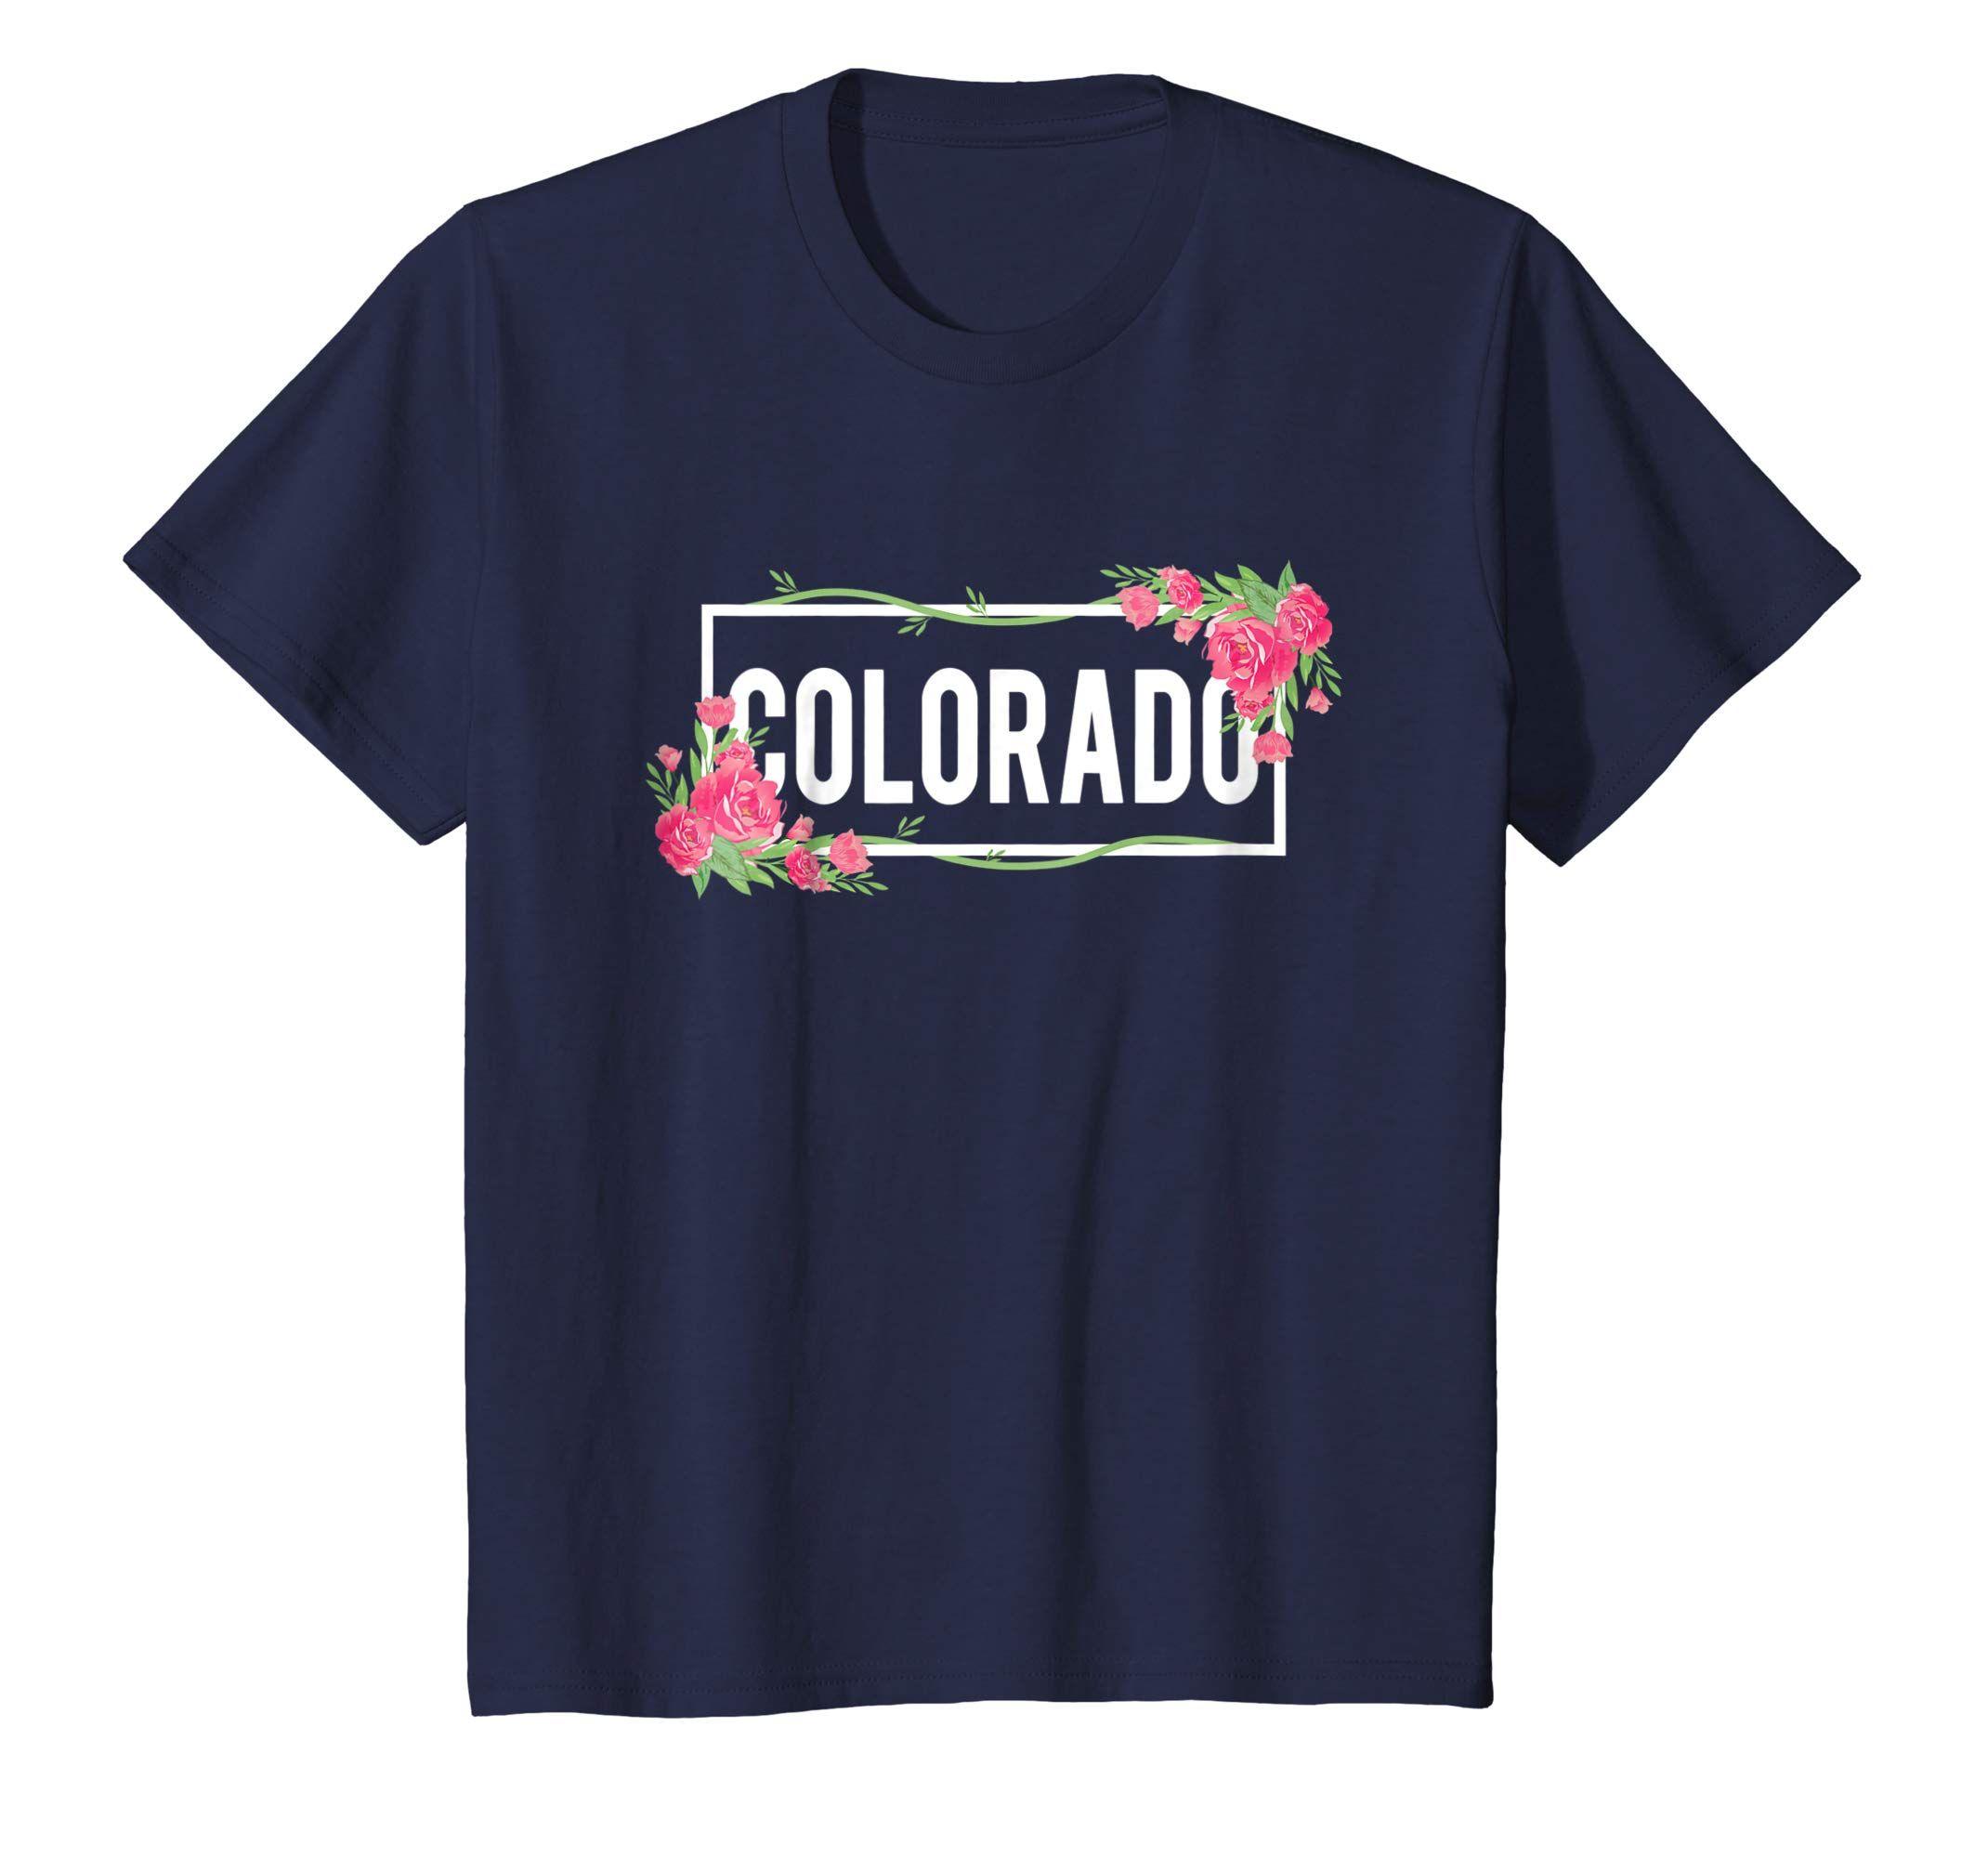 Colorado Flower Logo - Amazon.com: Colorado T-Shirt Floral Hibiscus Flower: Clothing